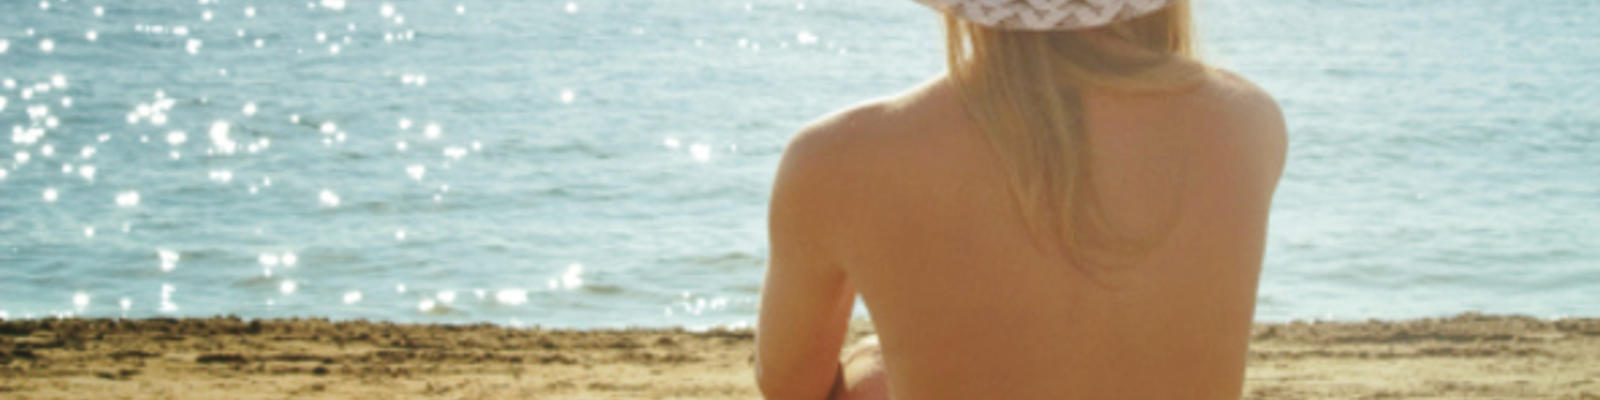 Tumblr nude beach couples